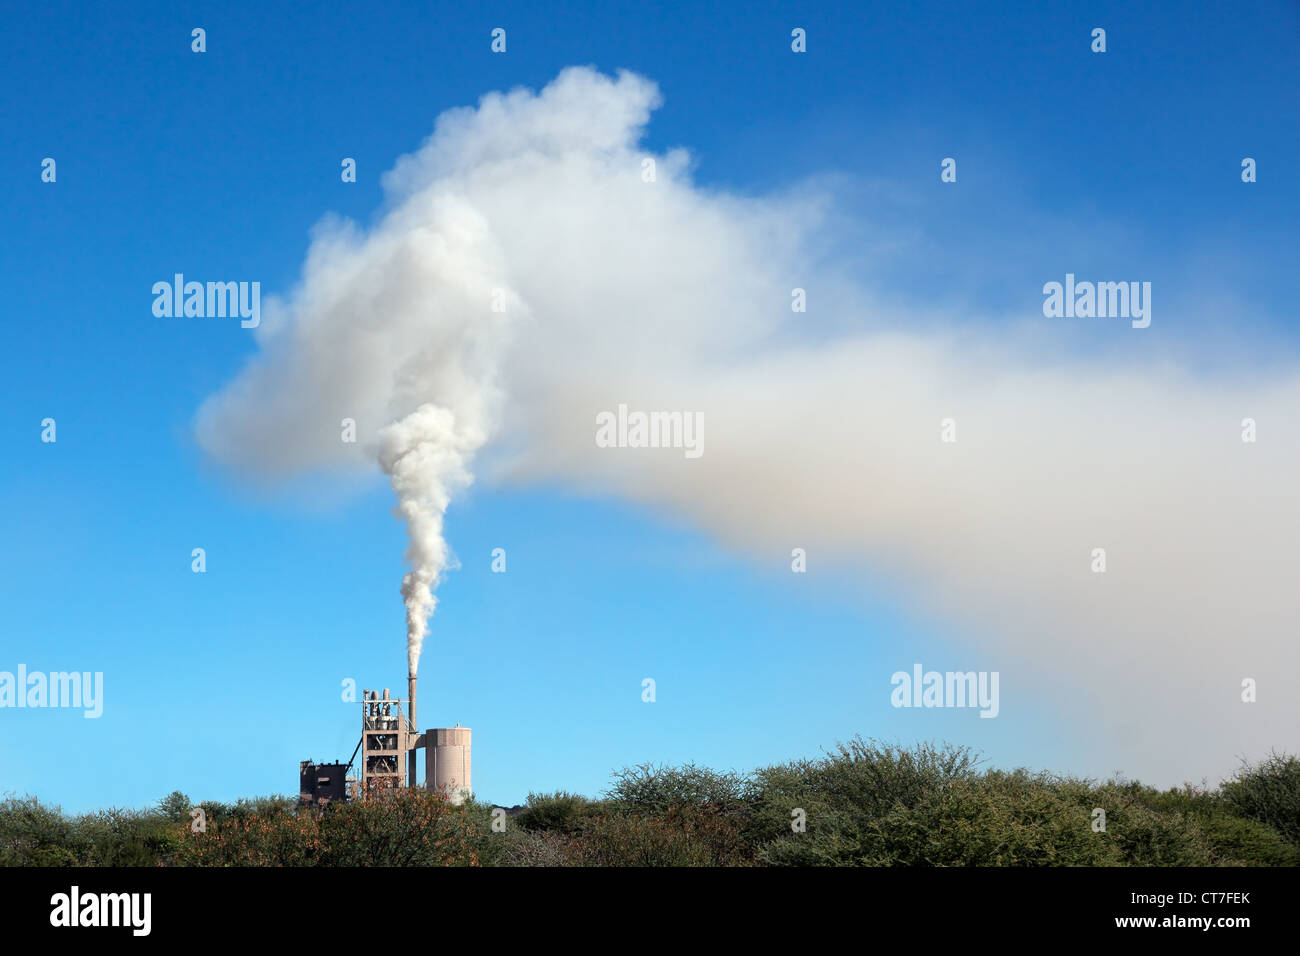 El humo de una planta industrial a la deriva en el viento contra un cielo azul Foto de stock